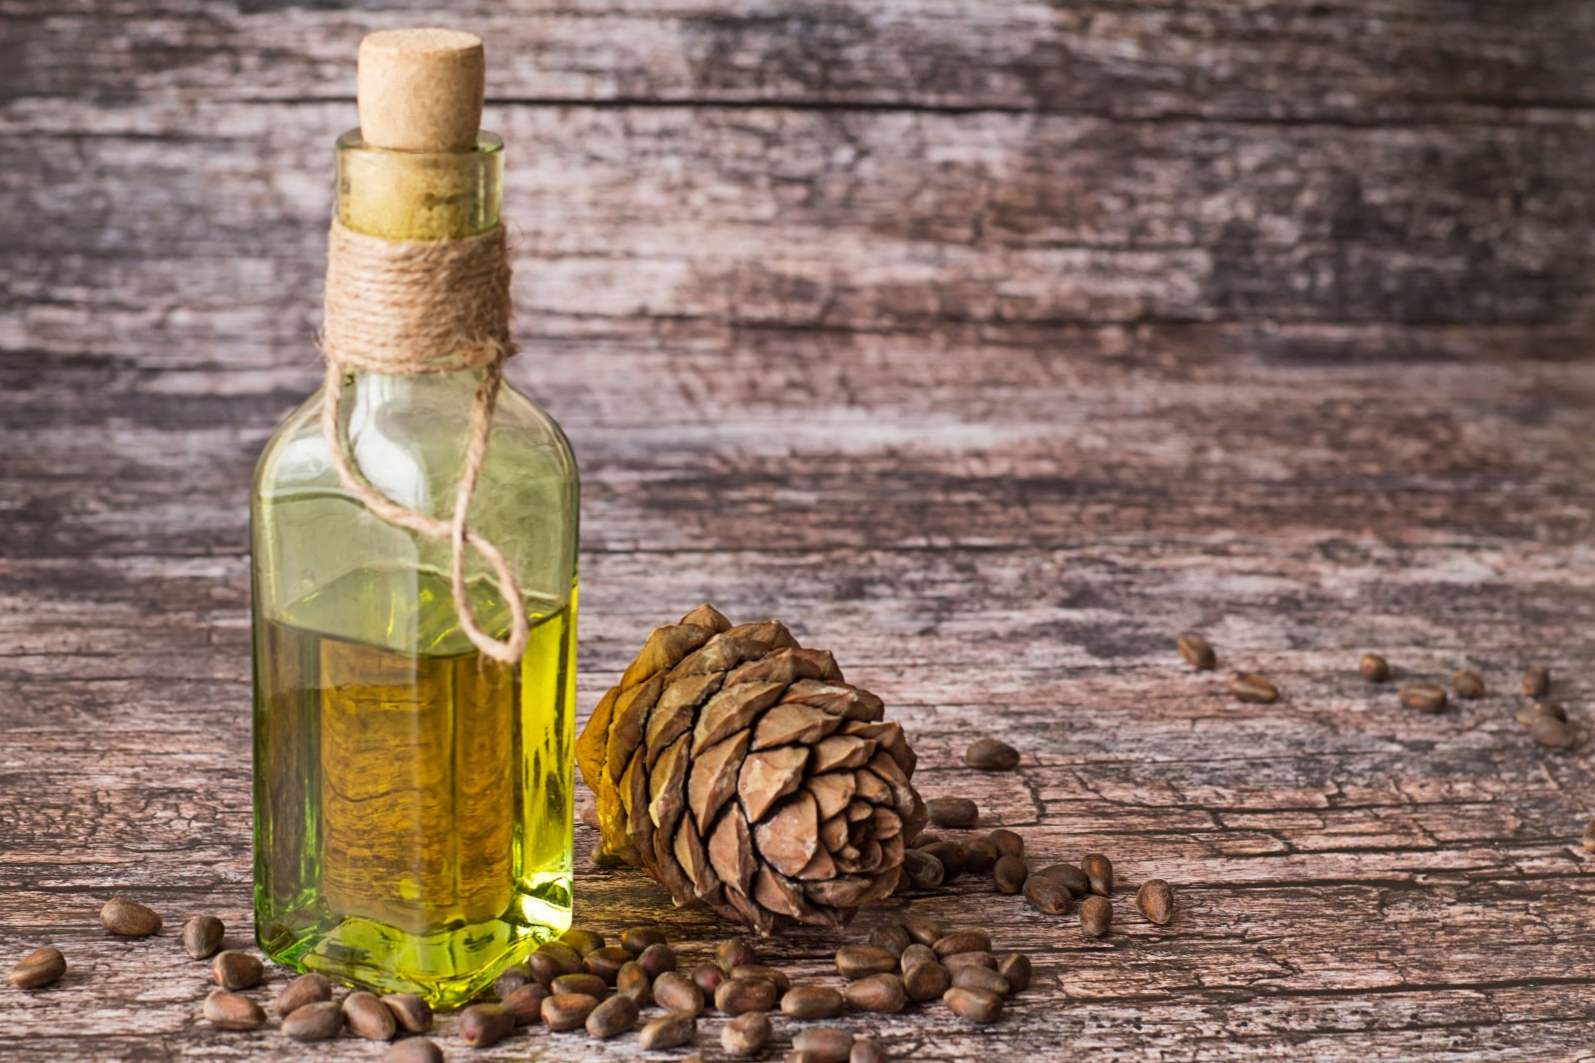 Cedarovo ulje ima ljekovita i korisna svojstva i kontraindikacije